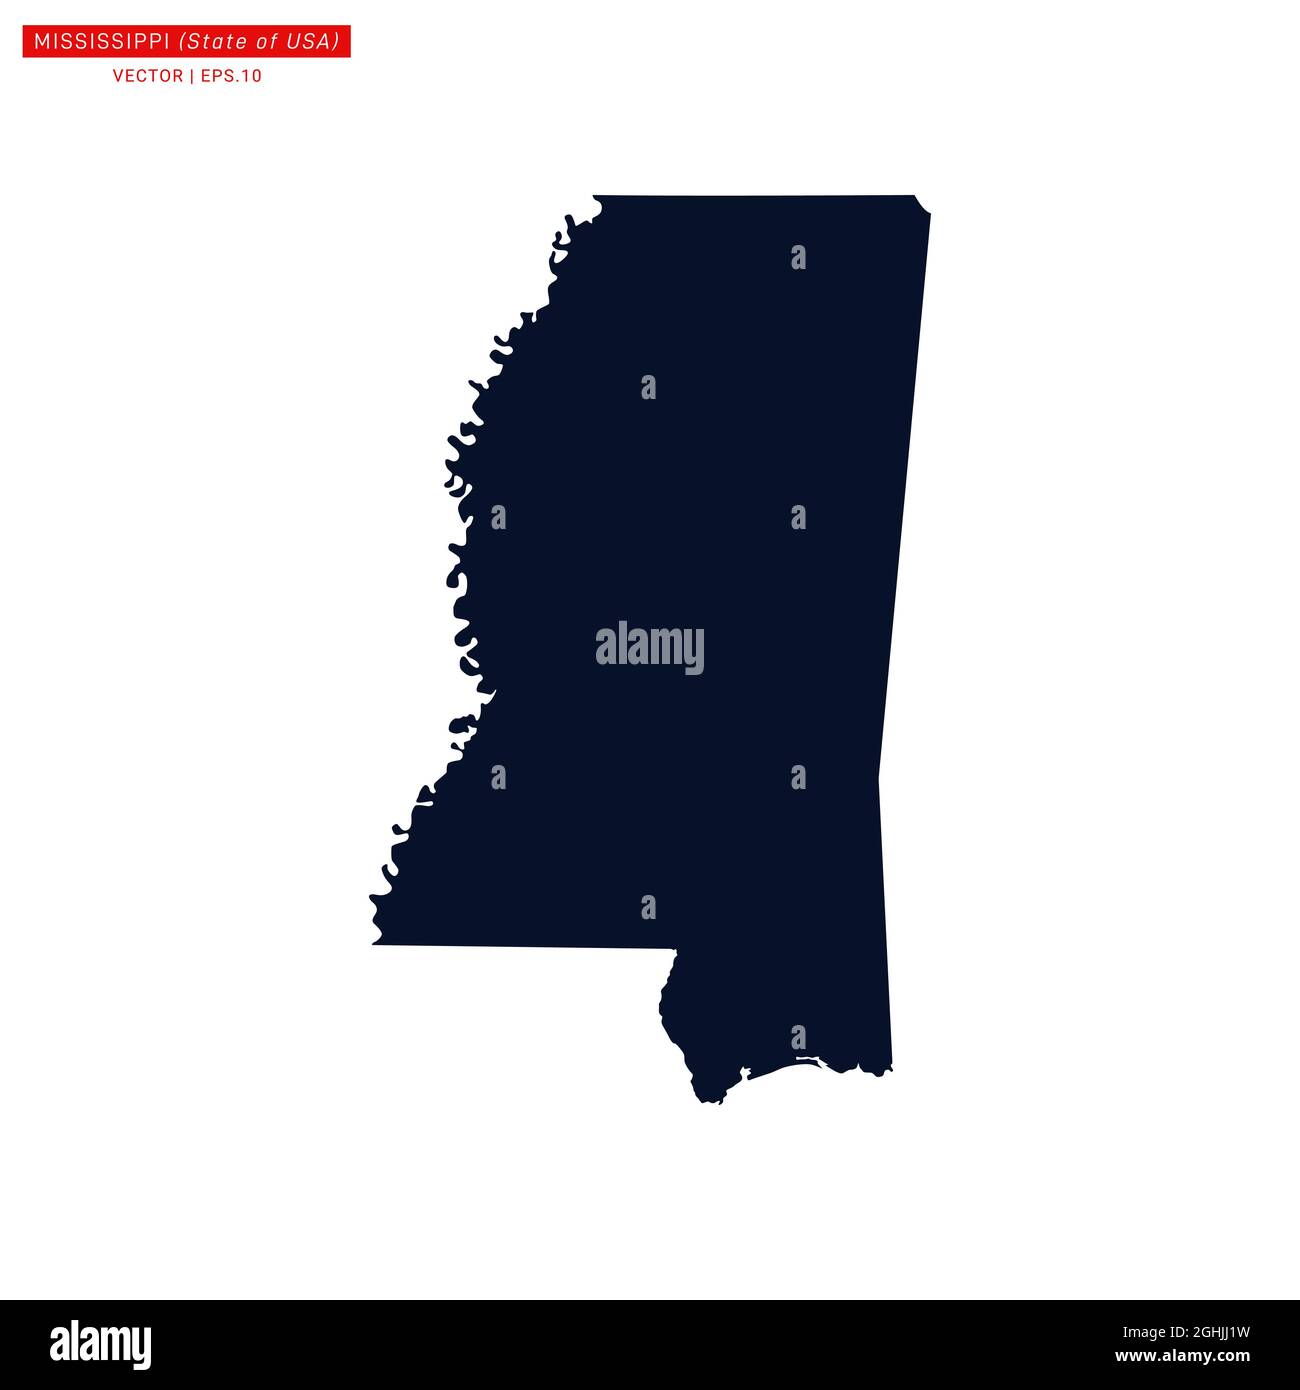 Modello di disegno di illustrazione del vettore mappa del Mississippi (USA). Vettore eps 10. Illustrazione Vettoriale